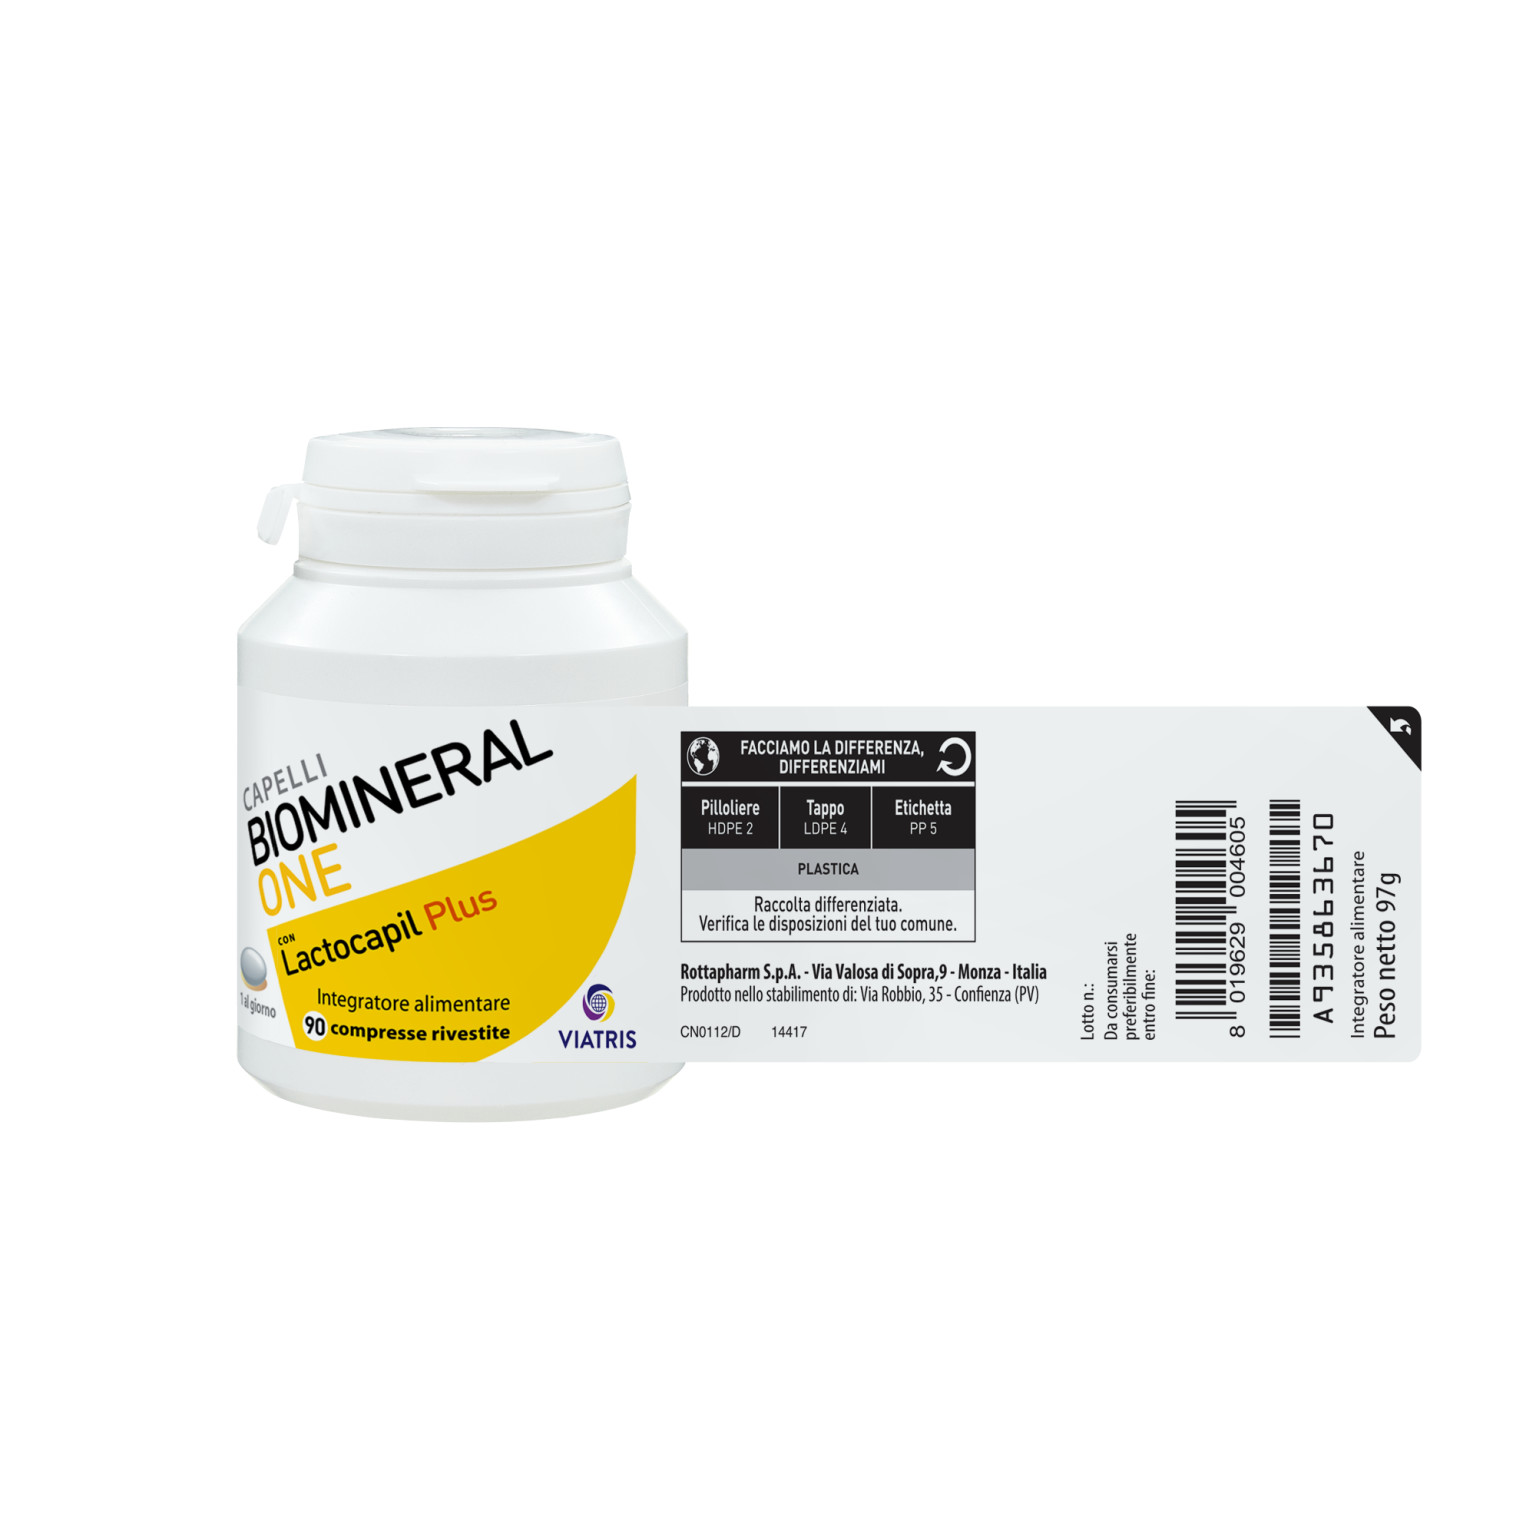 935863670 - Biomineral One Con Lactocapil Plus Integratore Alimentare Anticaduta Capelli 90 Compresse - 7867781_4.jpg